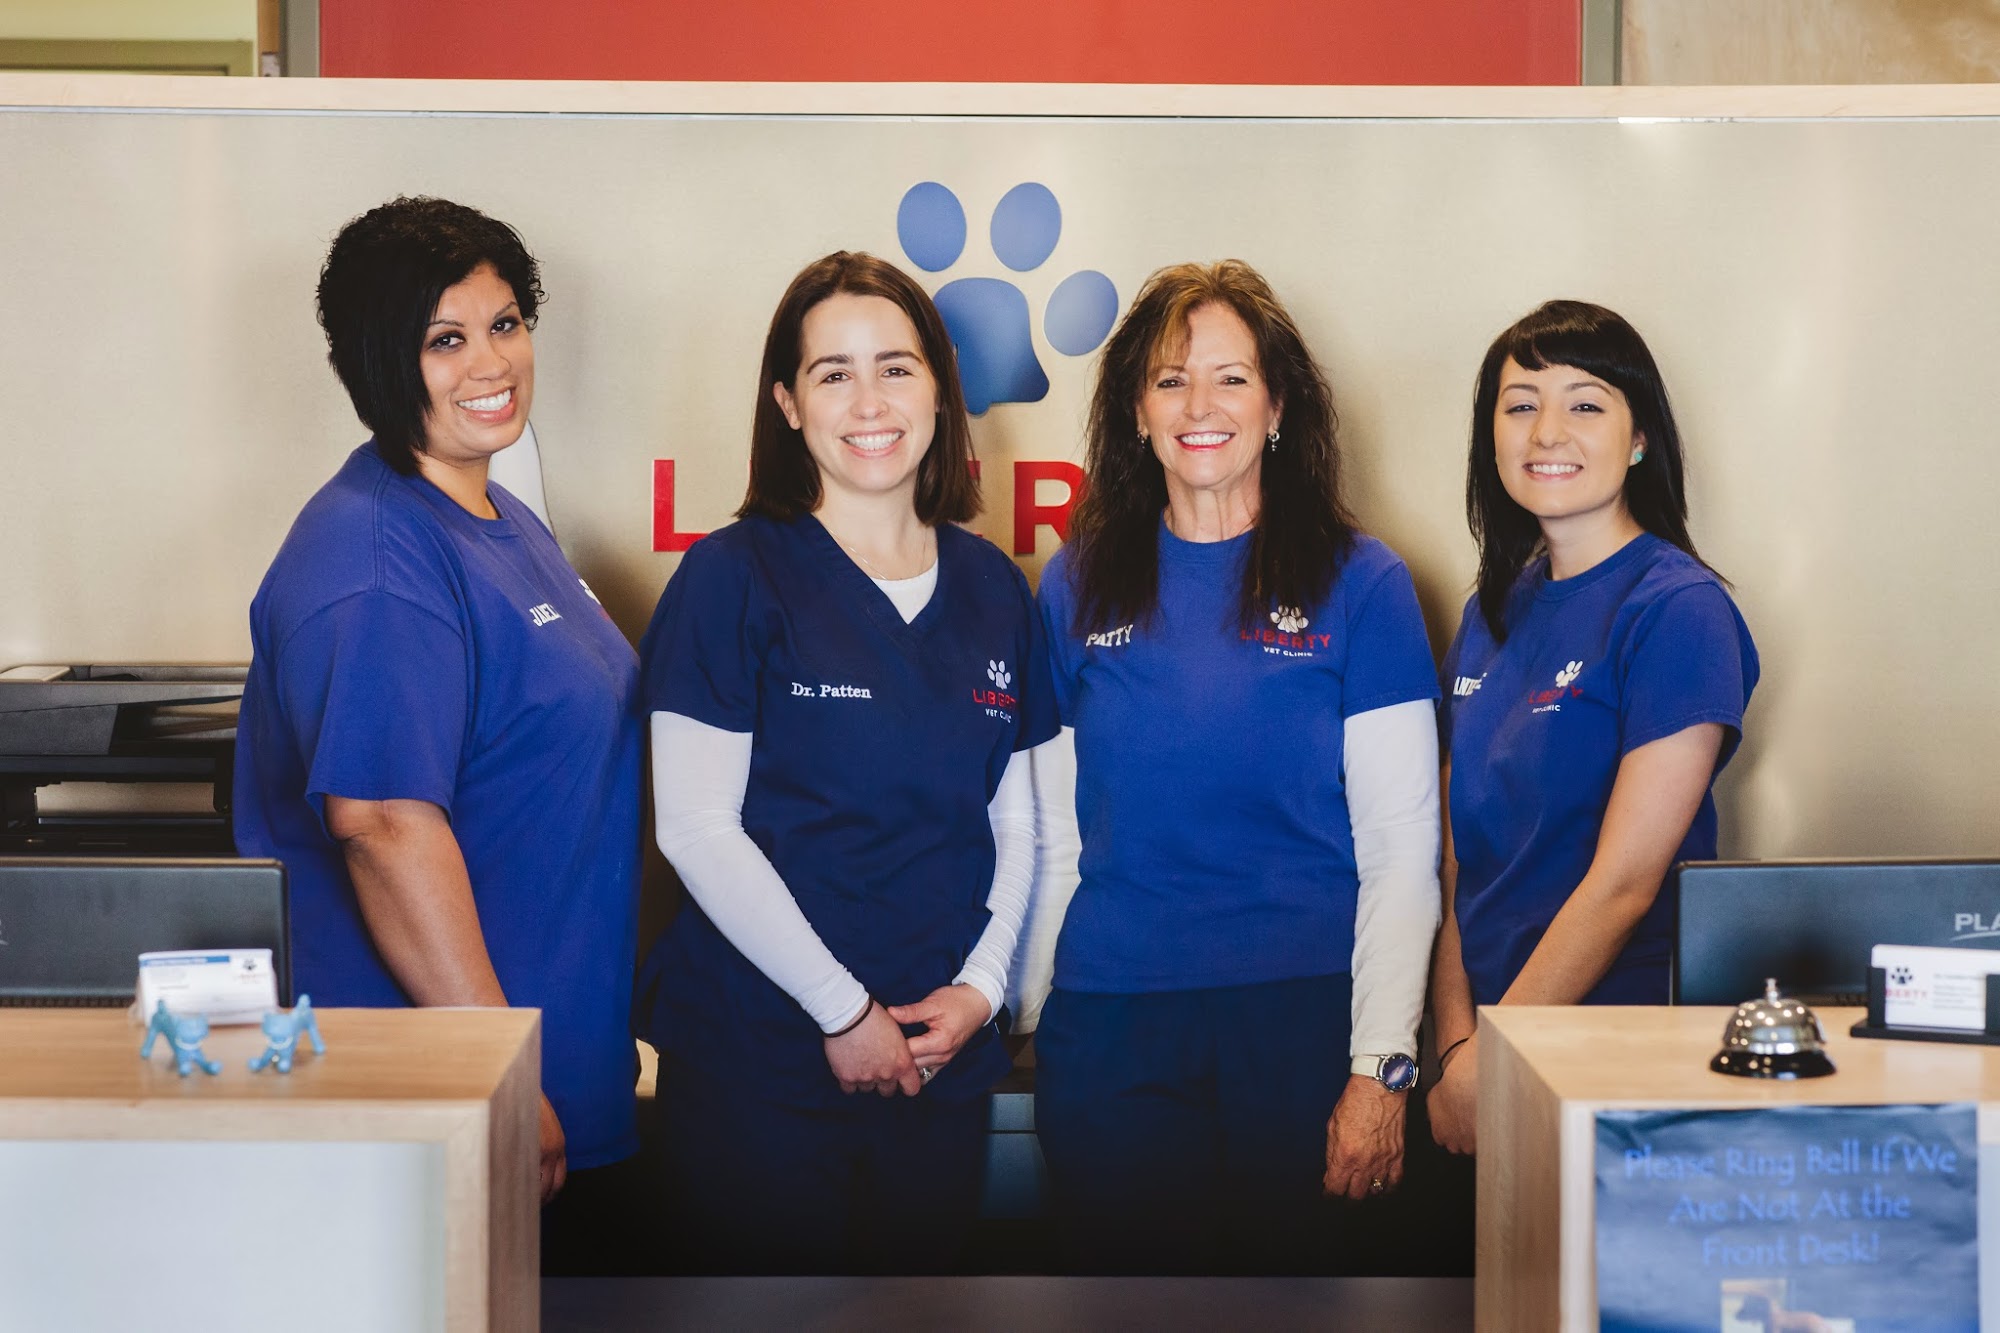 Liberty Veterinary Clinic